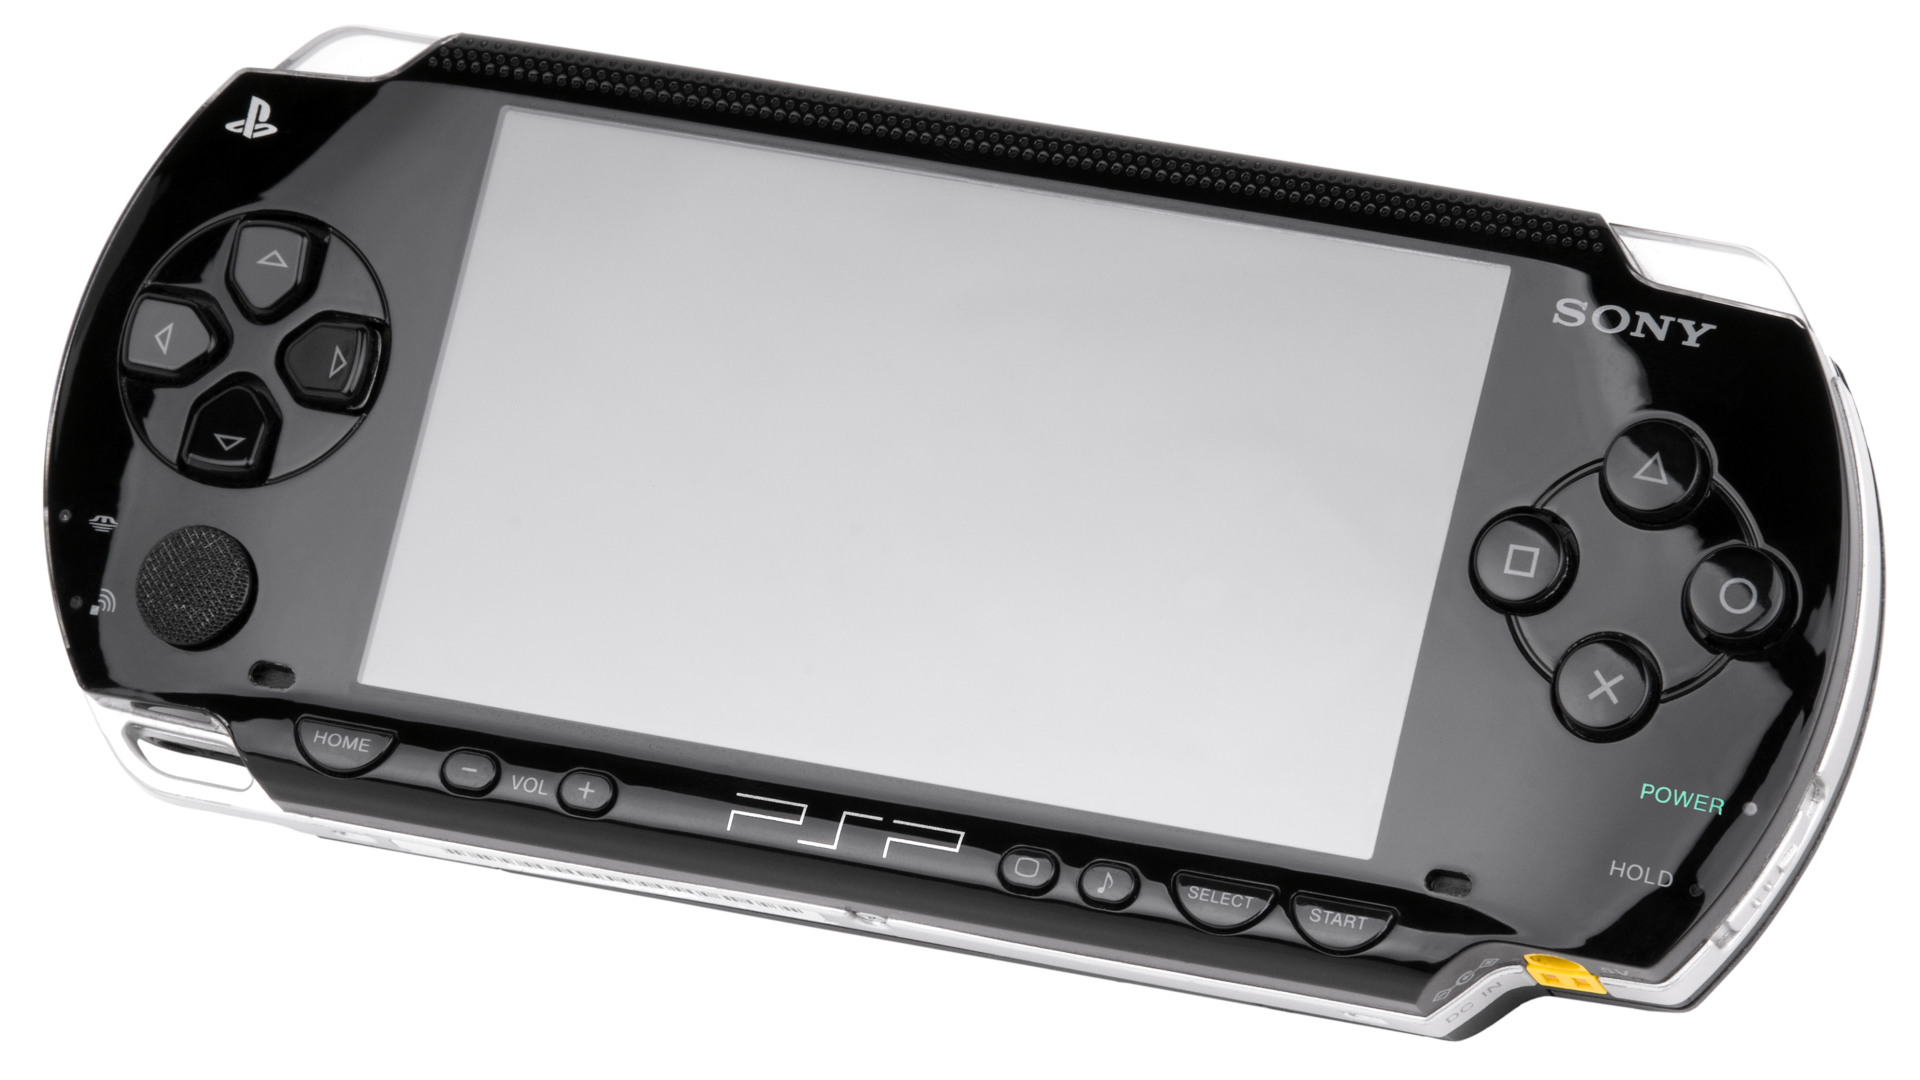 Una licencia dispara todo tipo de rumores en torno al regreso de la PSP, la consola portátil de Sony